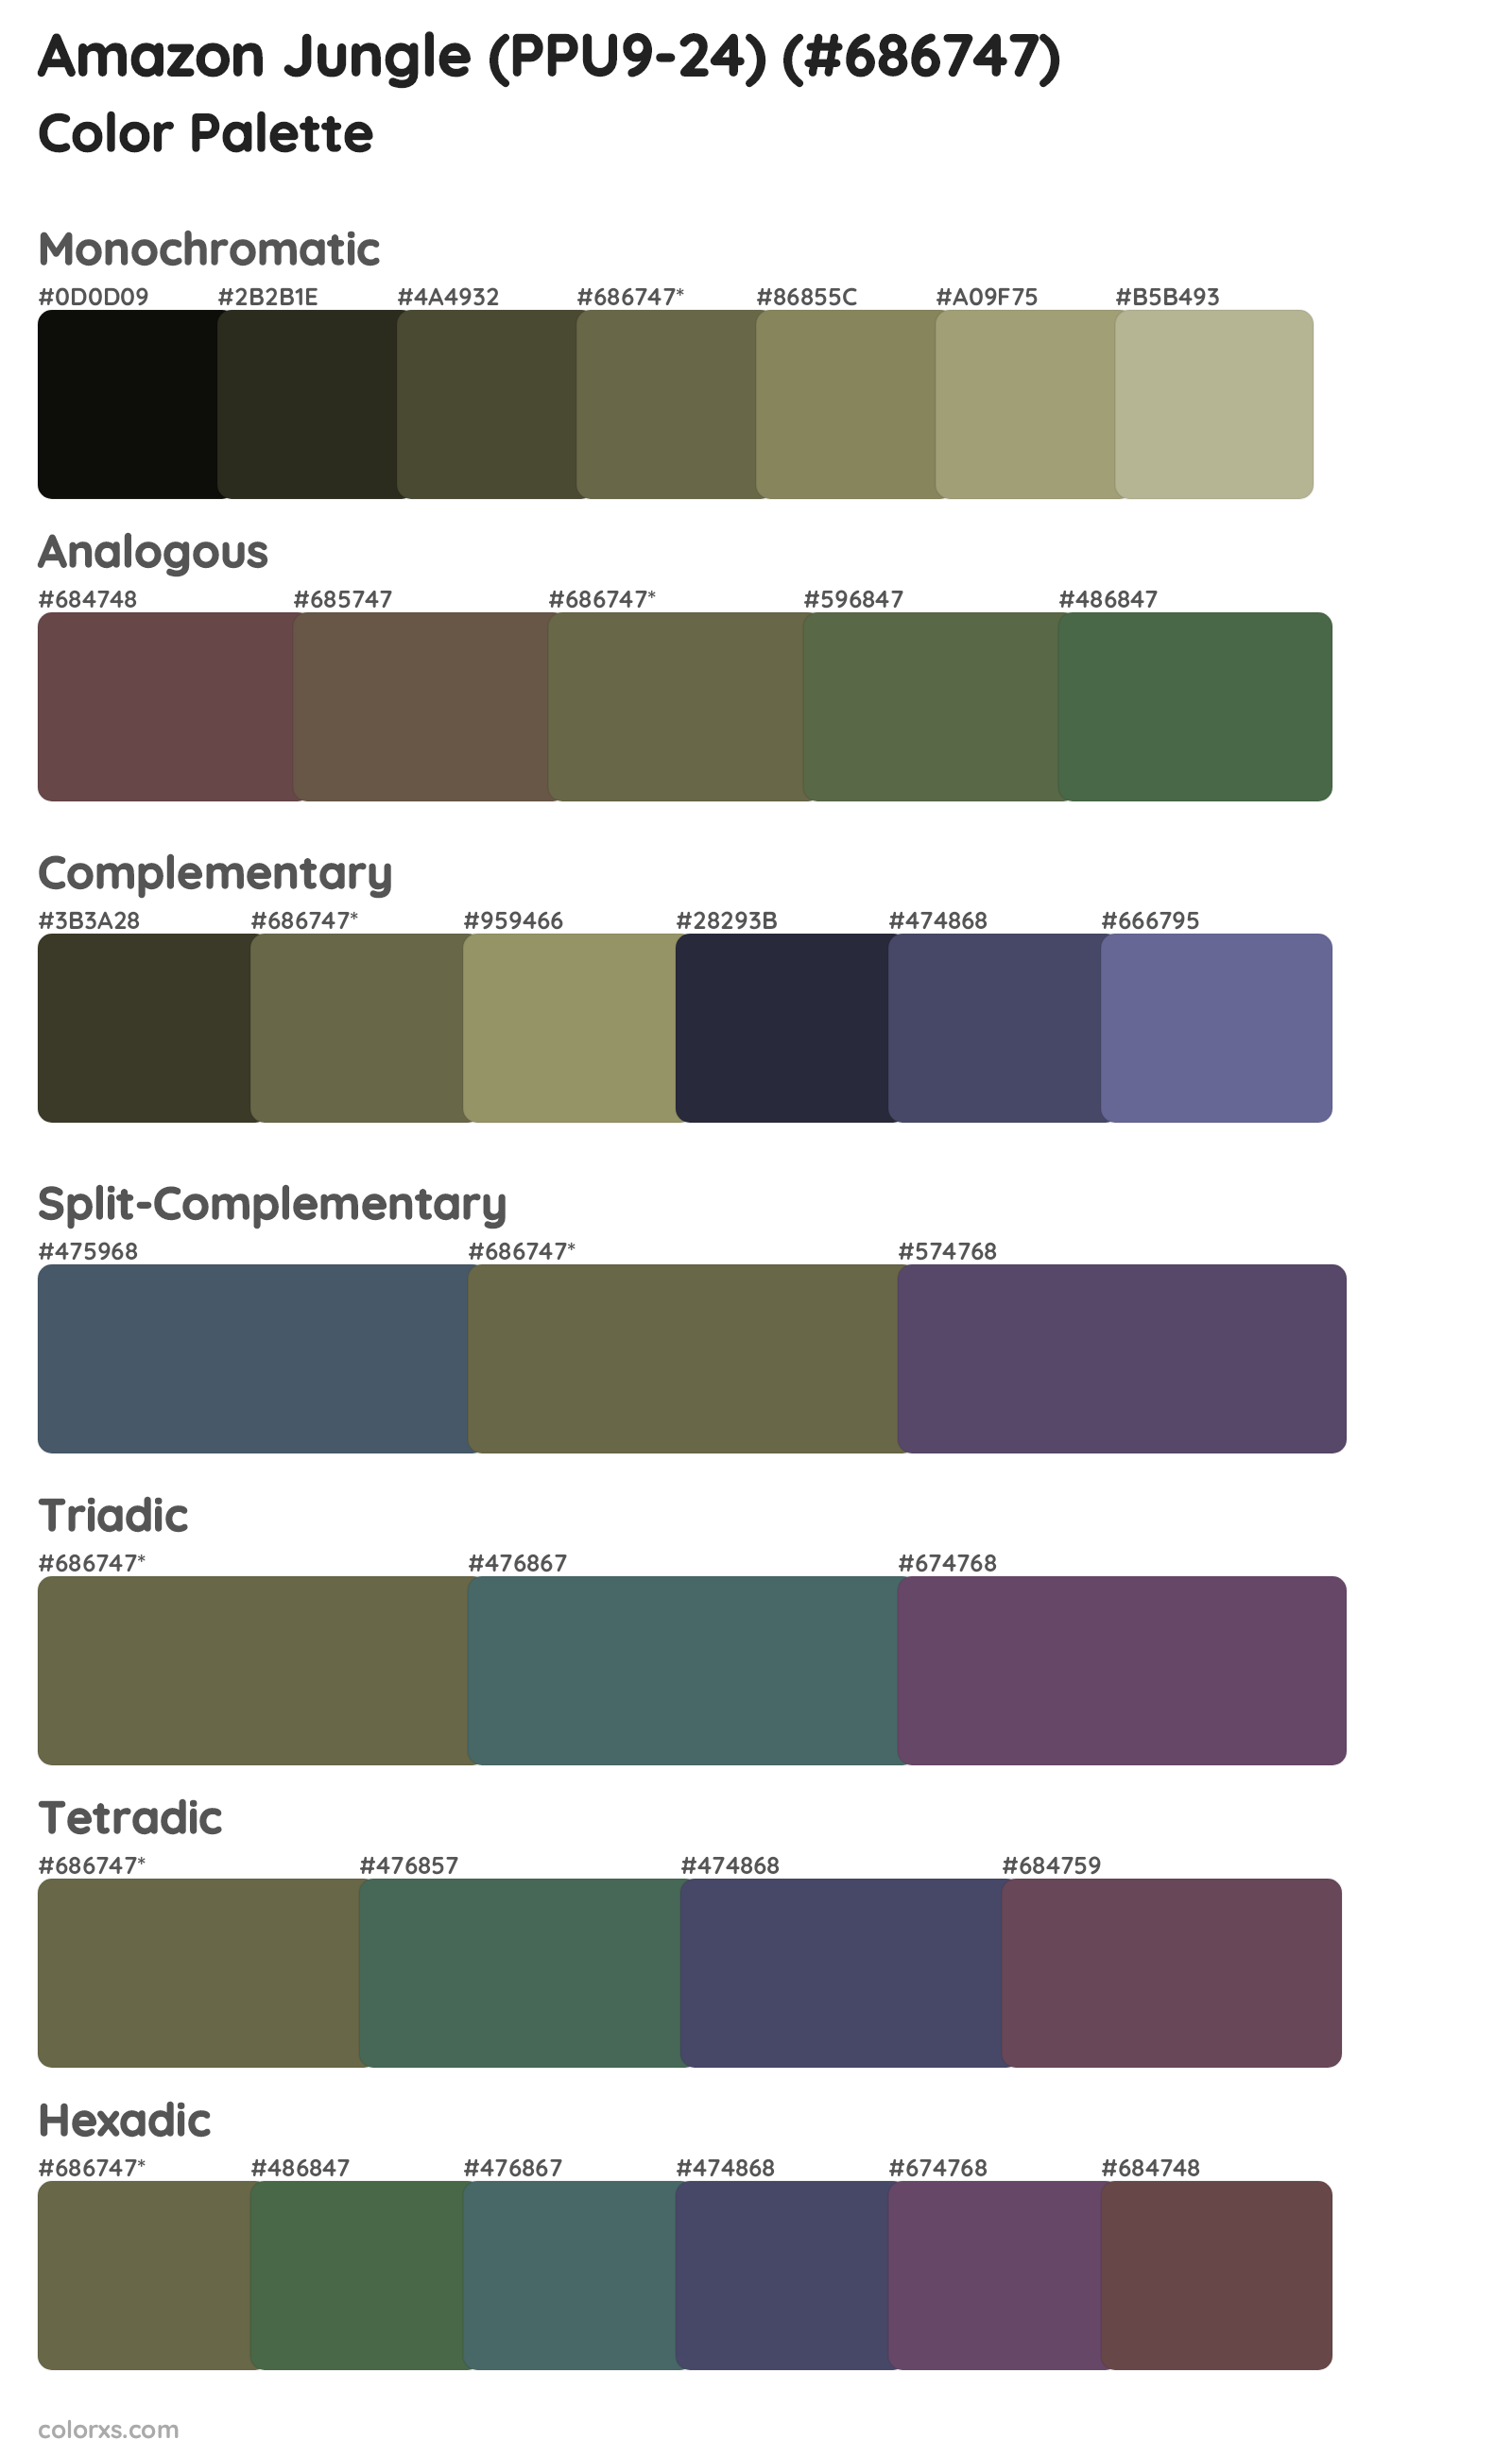 Amazon Jungle (PPU9-24) Color Scheme Palettes